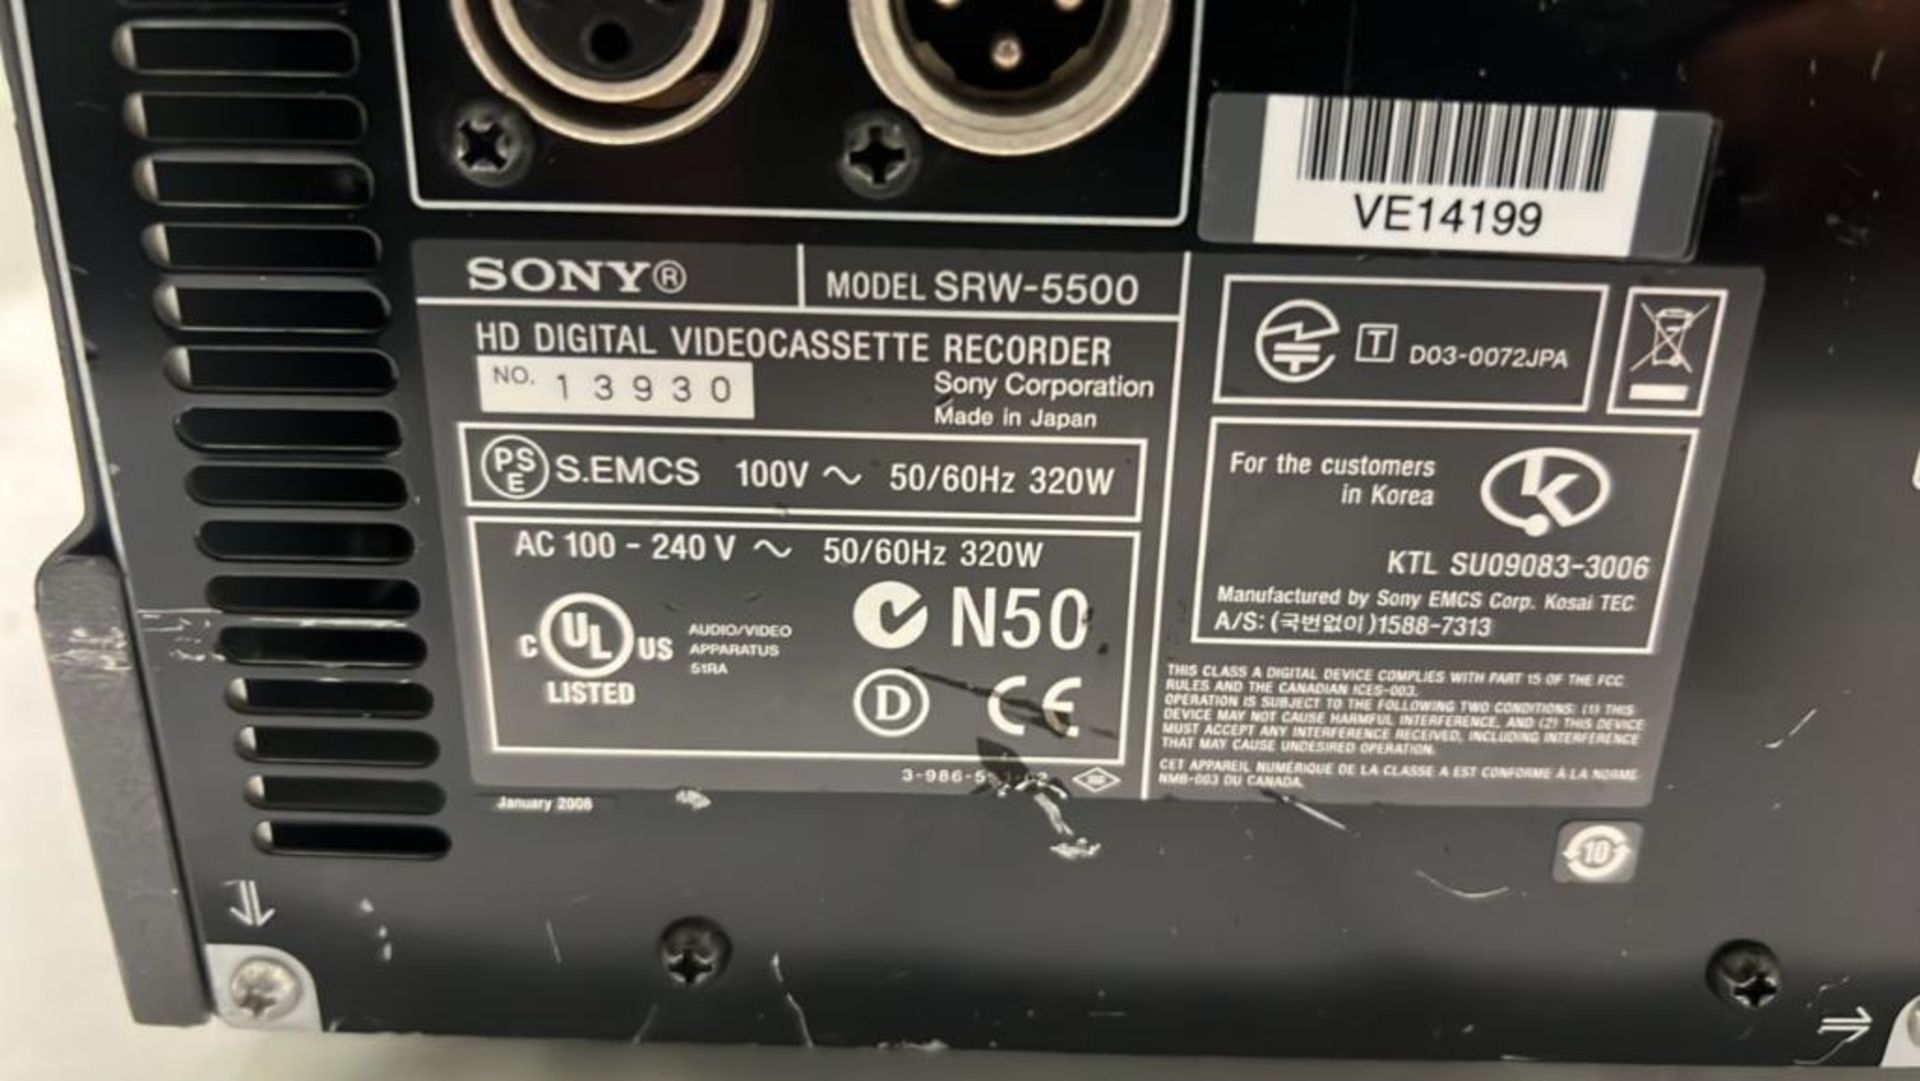 Sony SRW-5500 Digital Videocassette recorder with flight case SN :13930 - Bild 5 aus 6